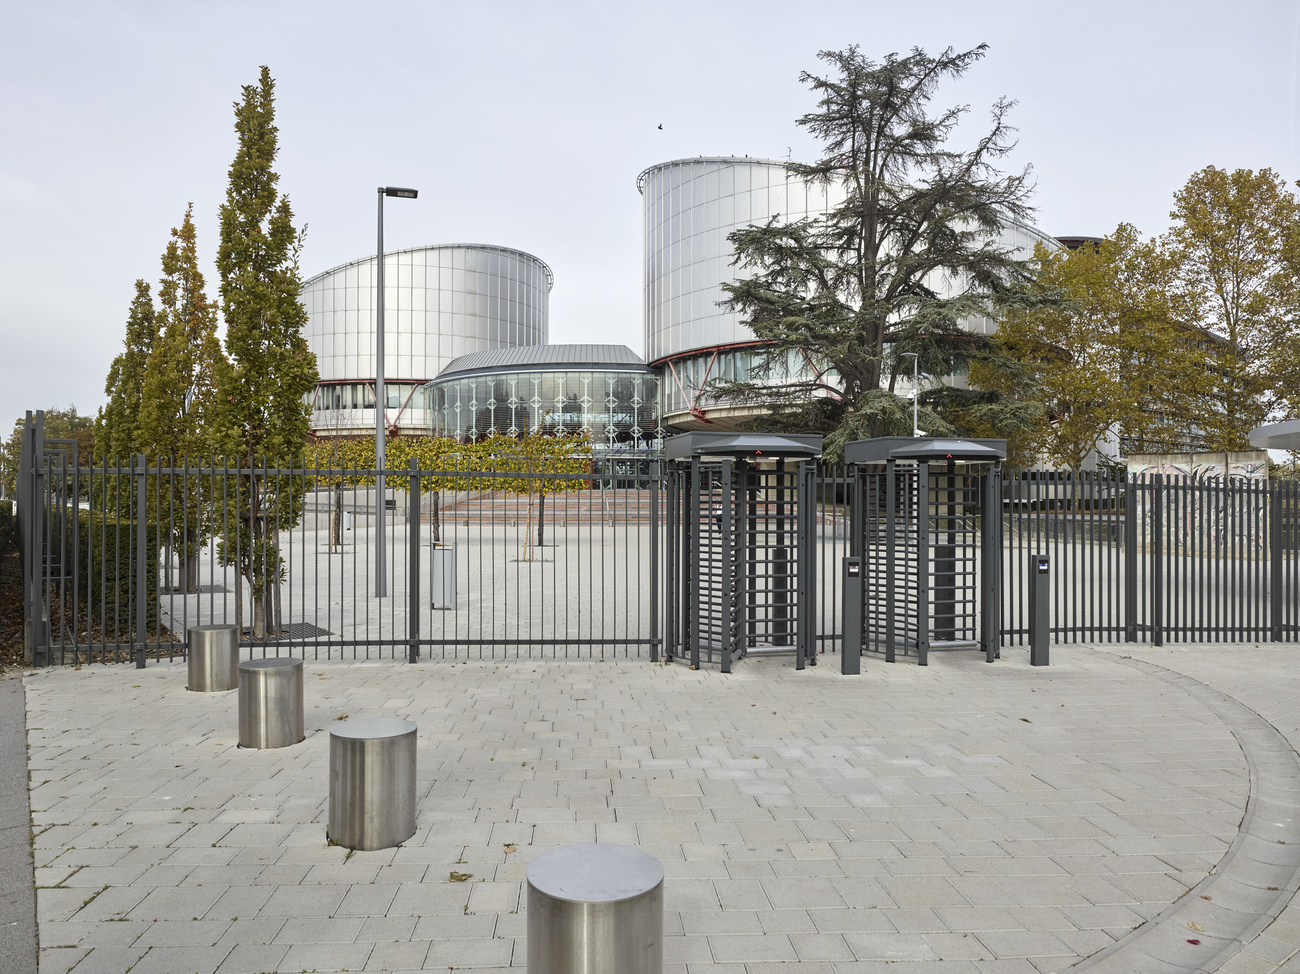 欧州人権裁判所